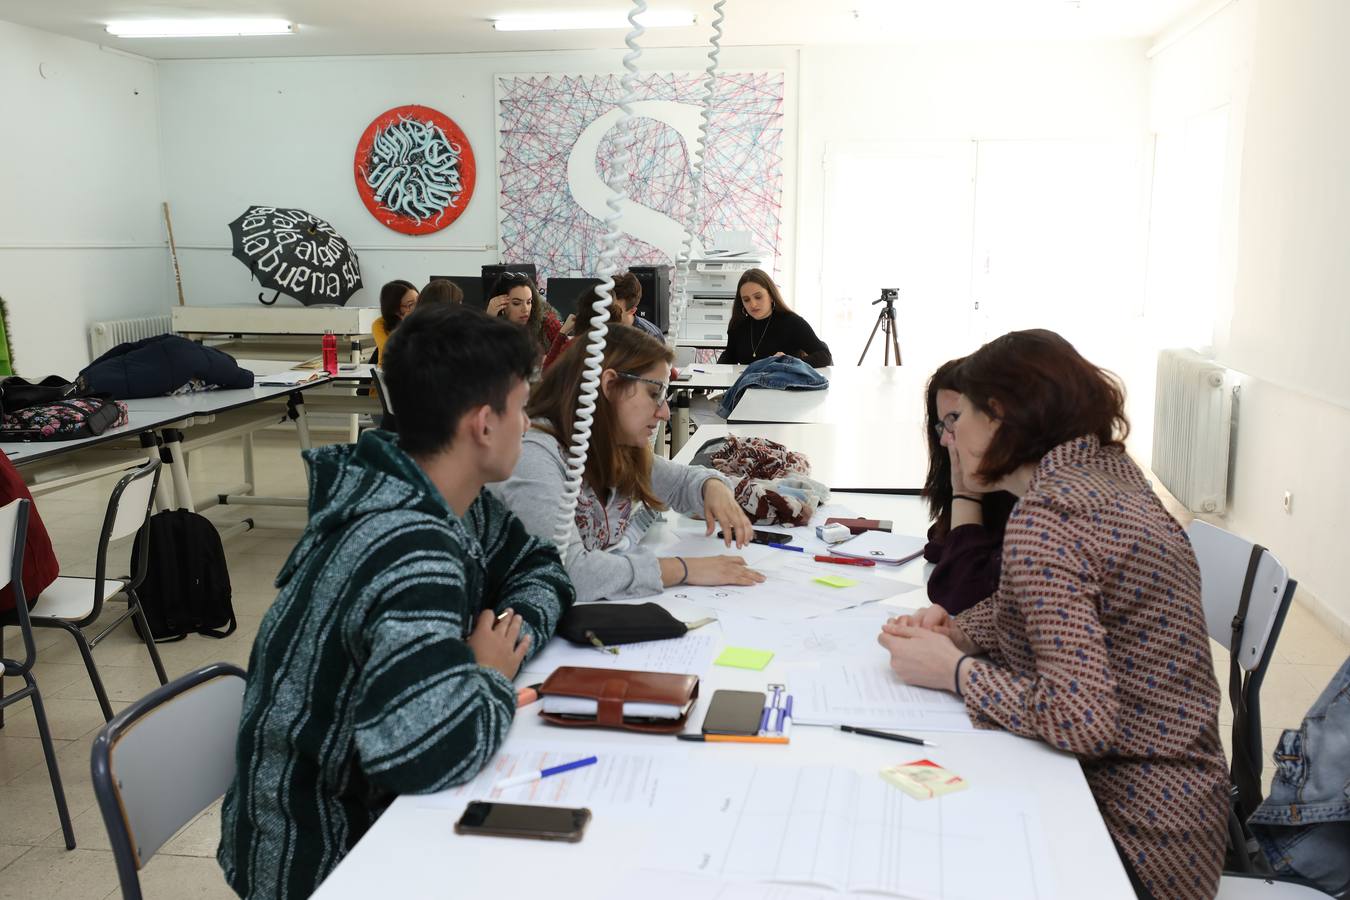 Del 11 al 14 de marzo, se celebra la III edición de la Semana del Diseño, DIME 2019, que organiza la Escuela de Arte y Superior de Diseño de Mérida con la colaboración de DIEX Asociación de Diseñadores de Extremadura y Centro Universitario de Mérida.